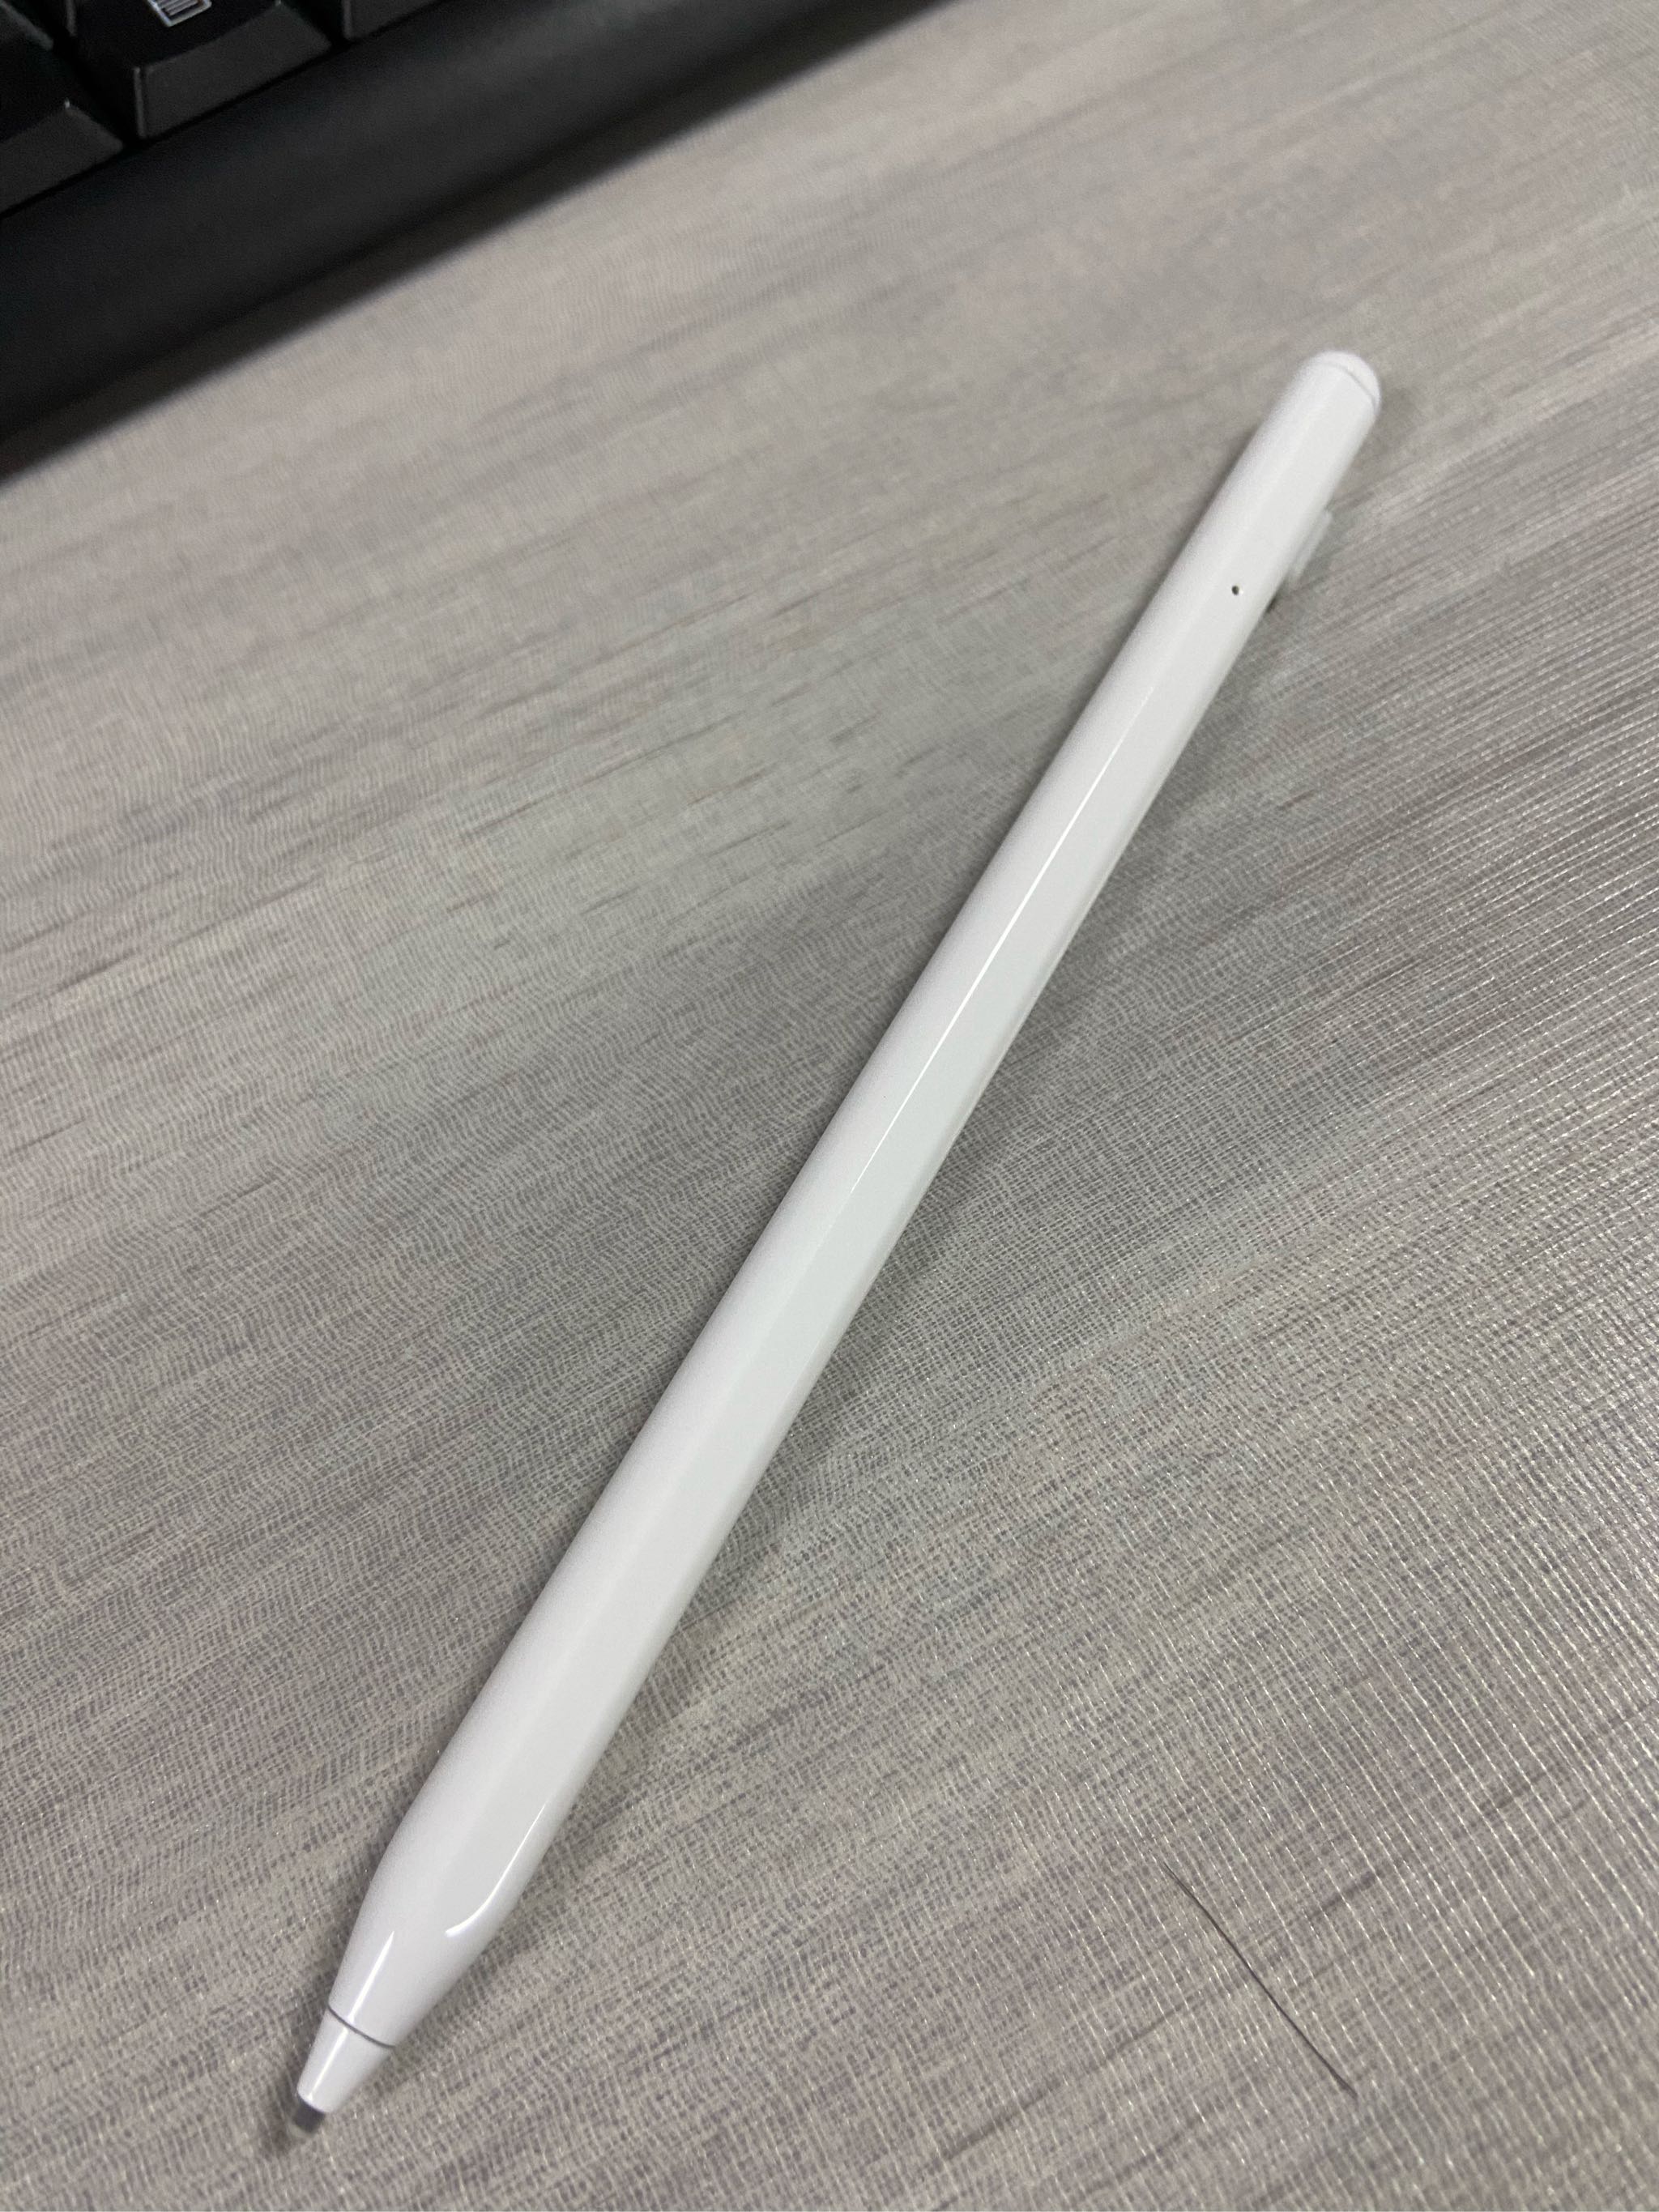 【原装正品】华为matepad11平板手写笔触控笔pro电容笔m-pencil2第二